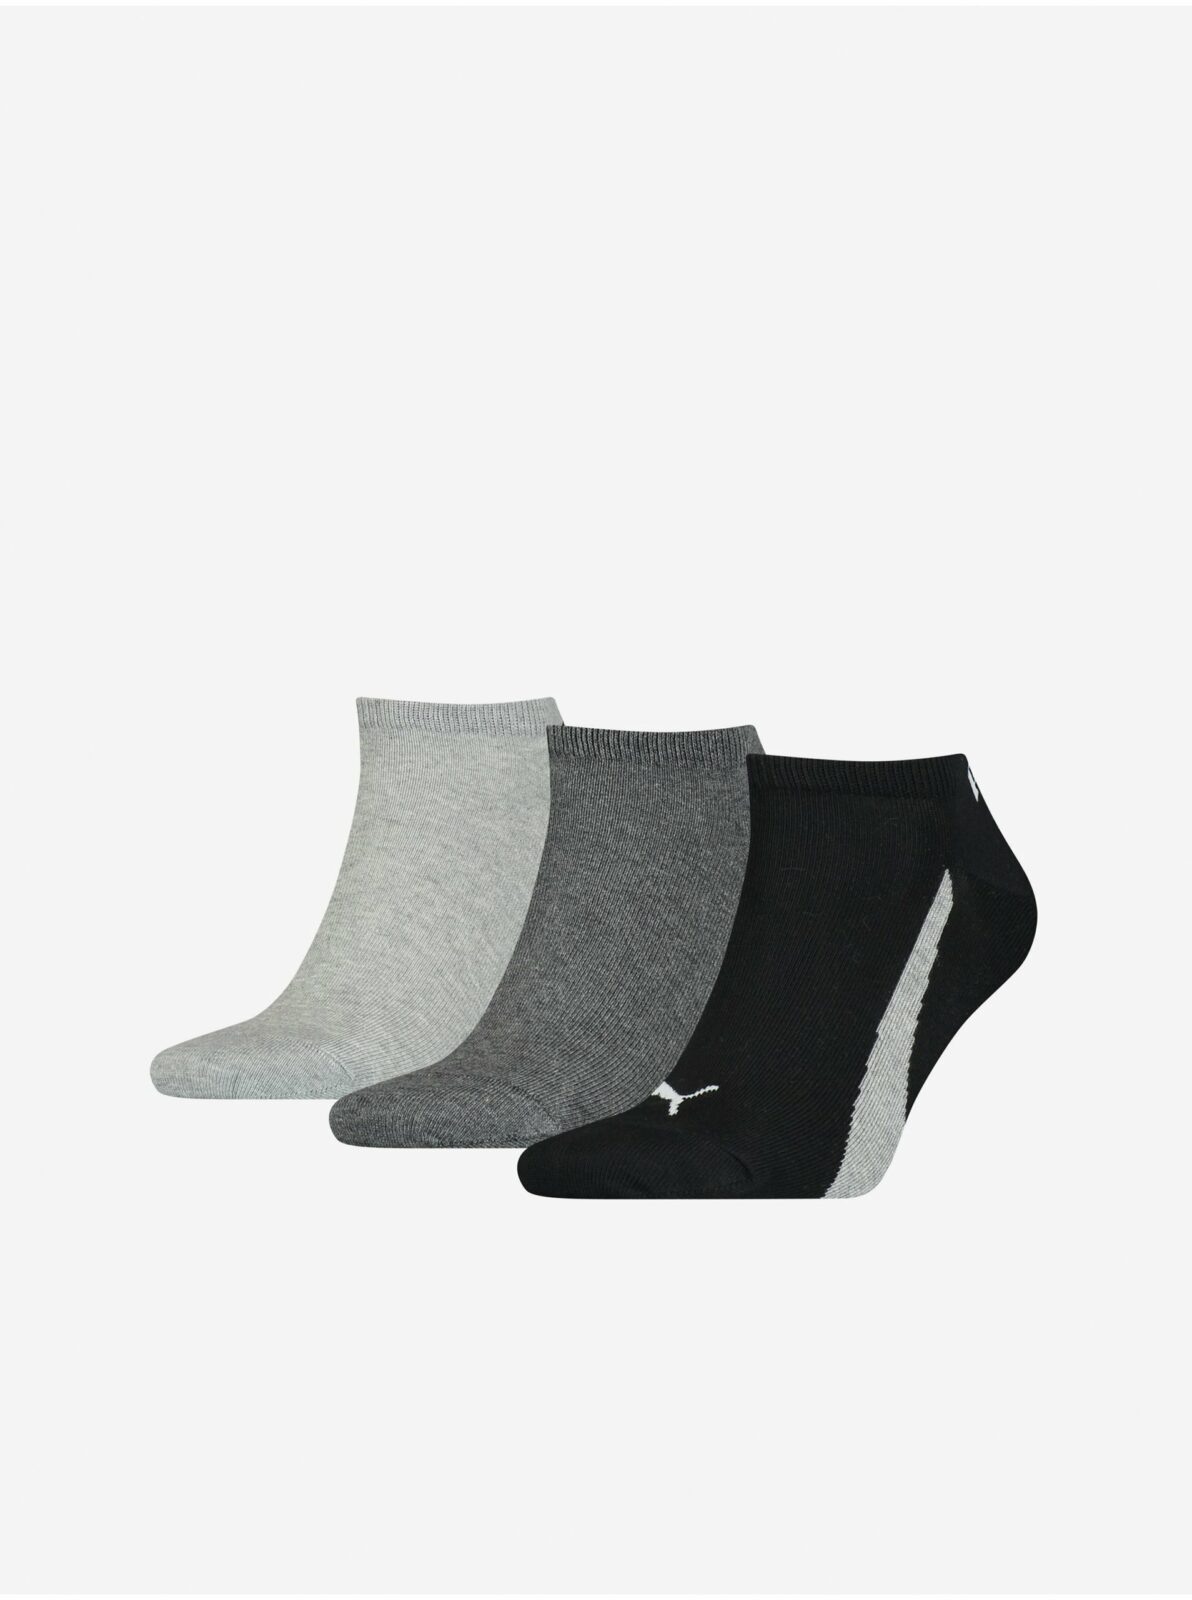 Sada tří párů ponožek v šedé a